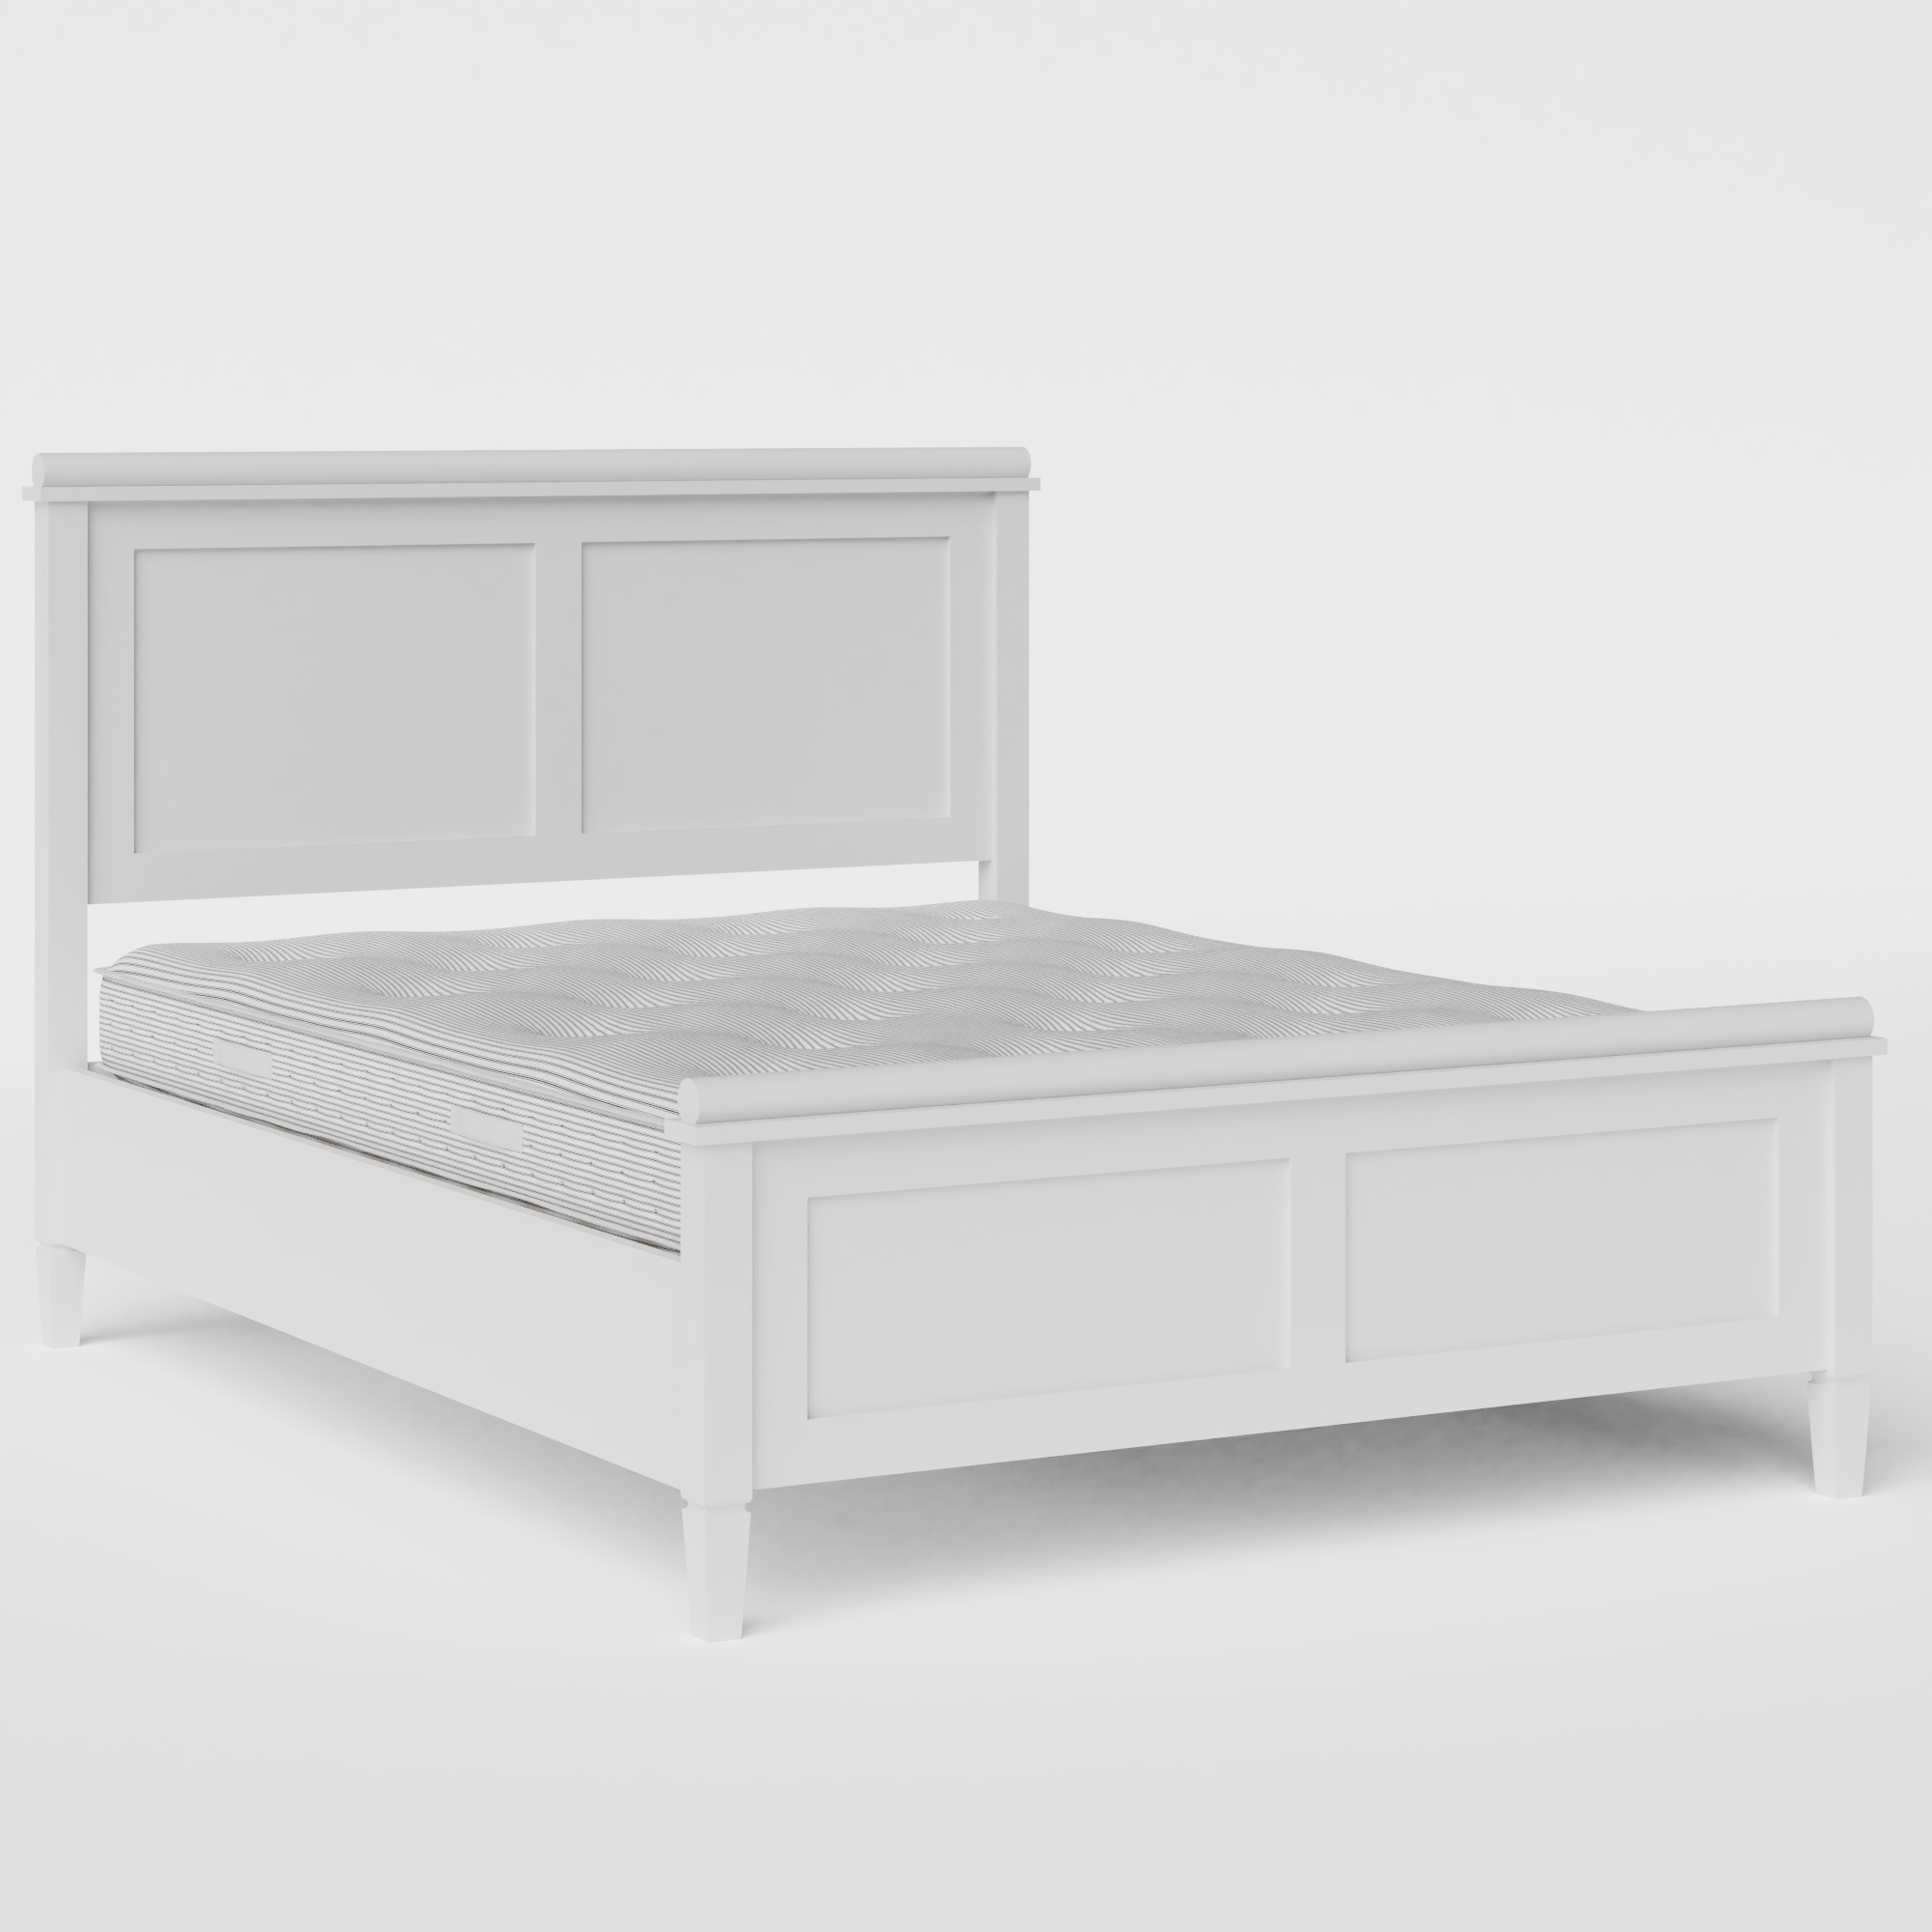 Nocturne Painted letto in legno bianco con materasso